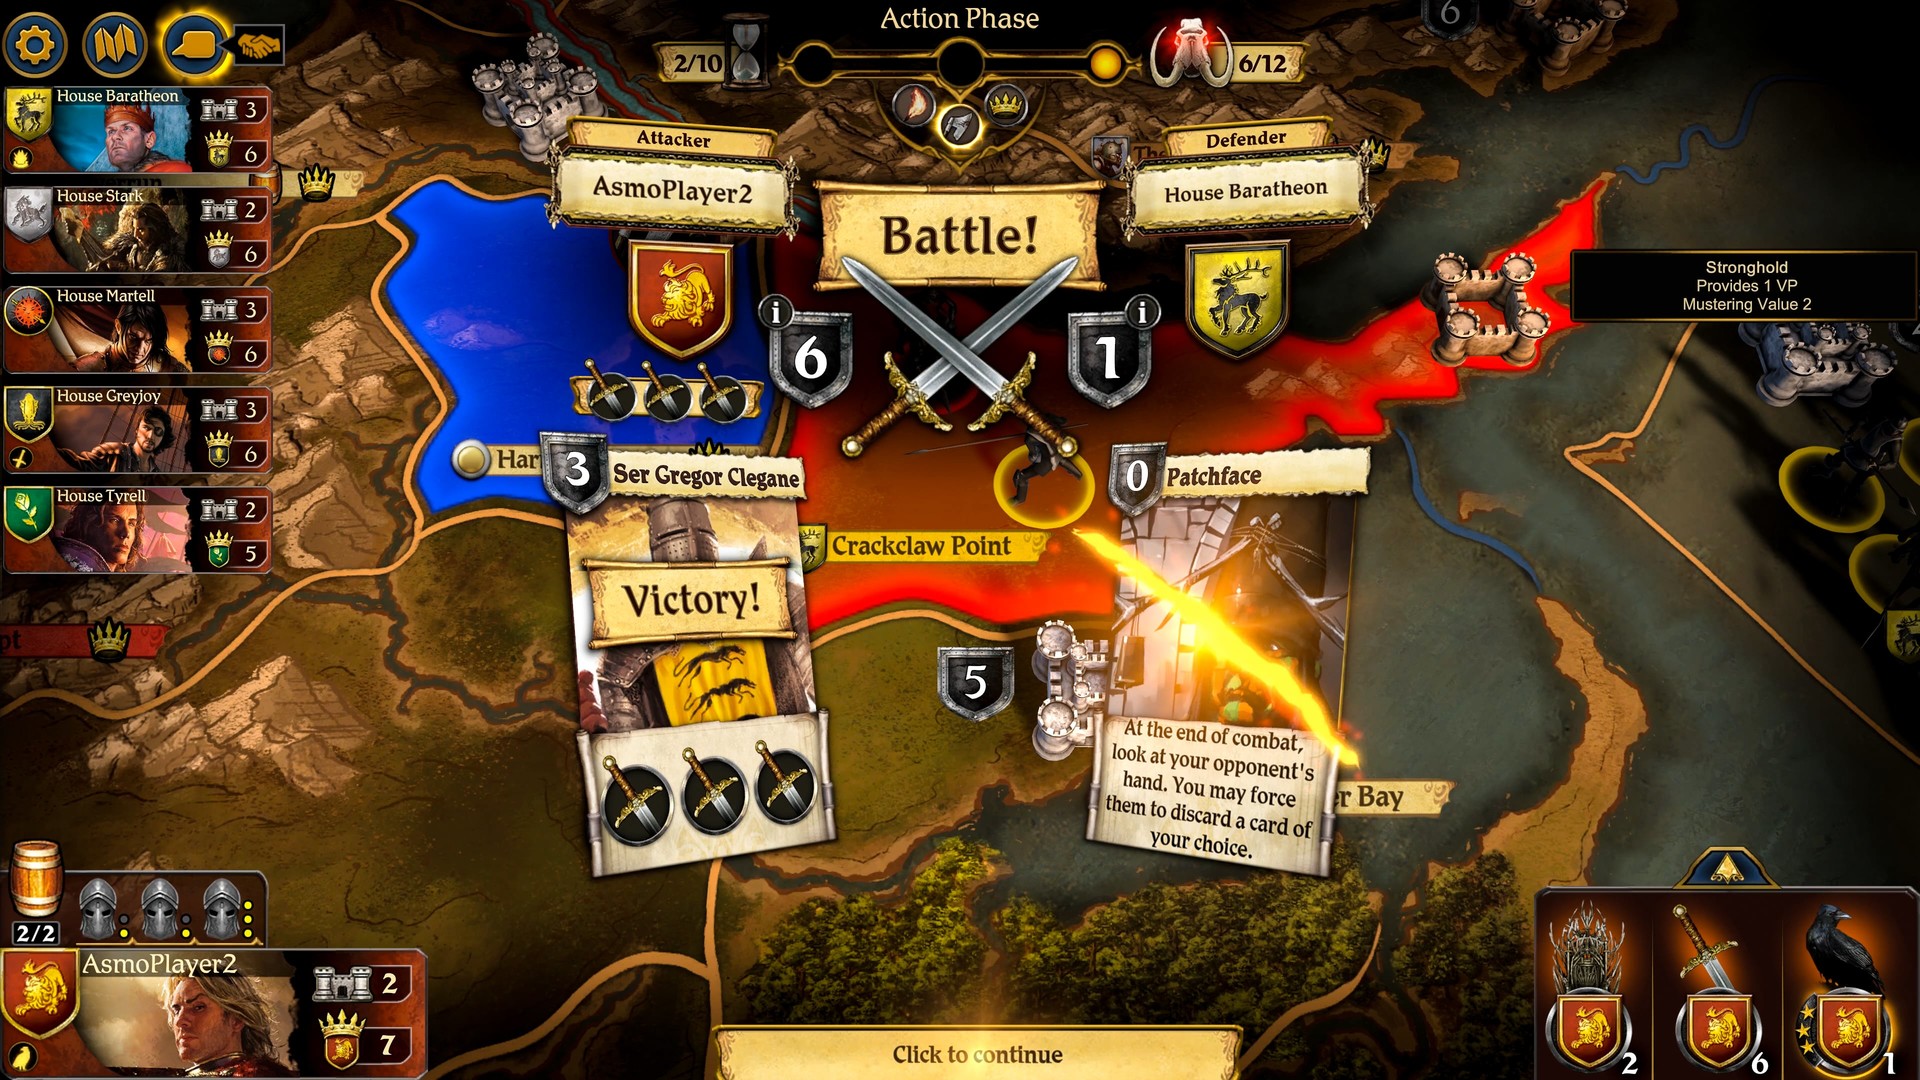 权力的游戏:桌游 A Game of Thrones: The Board Game 1.0.1.1330 Mac 破解版 最受欢迎的权游桌游之一改编